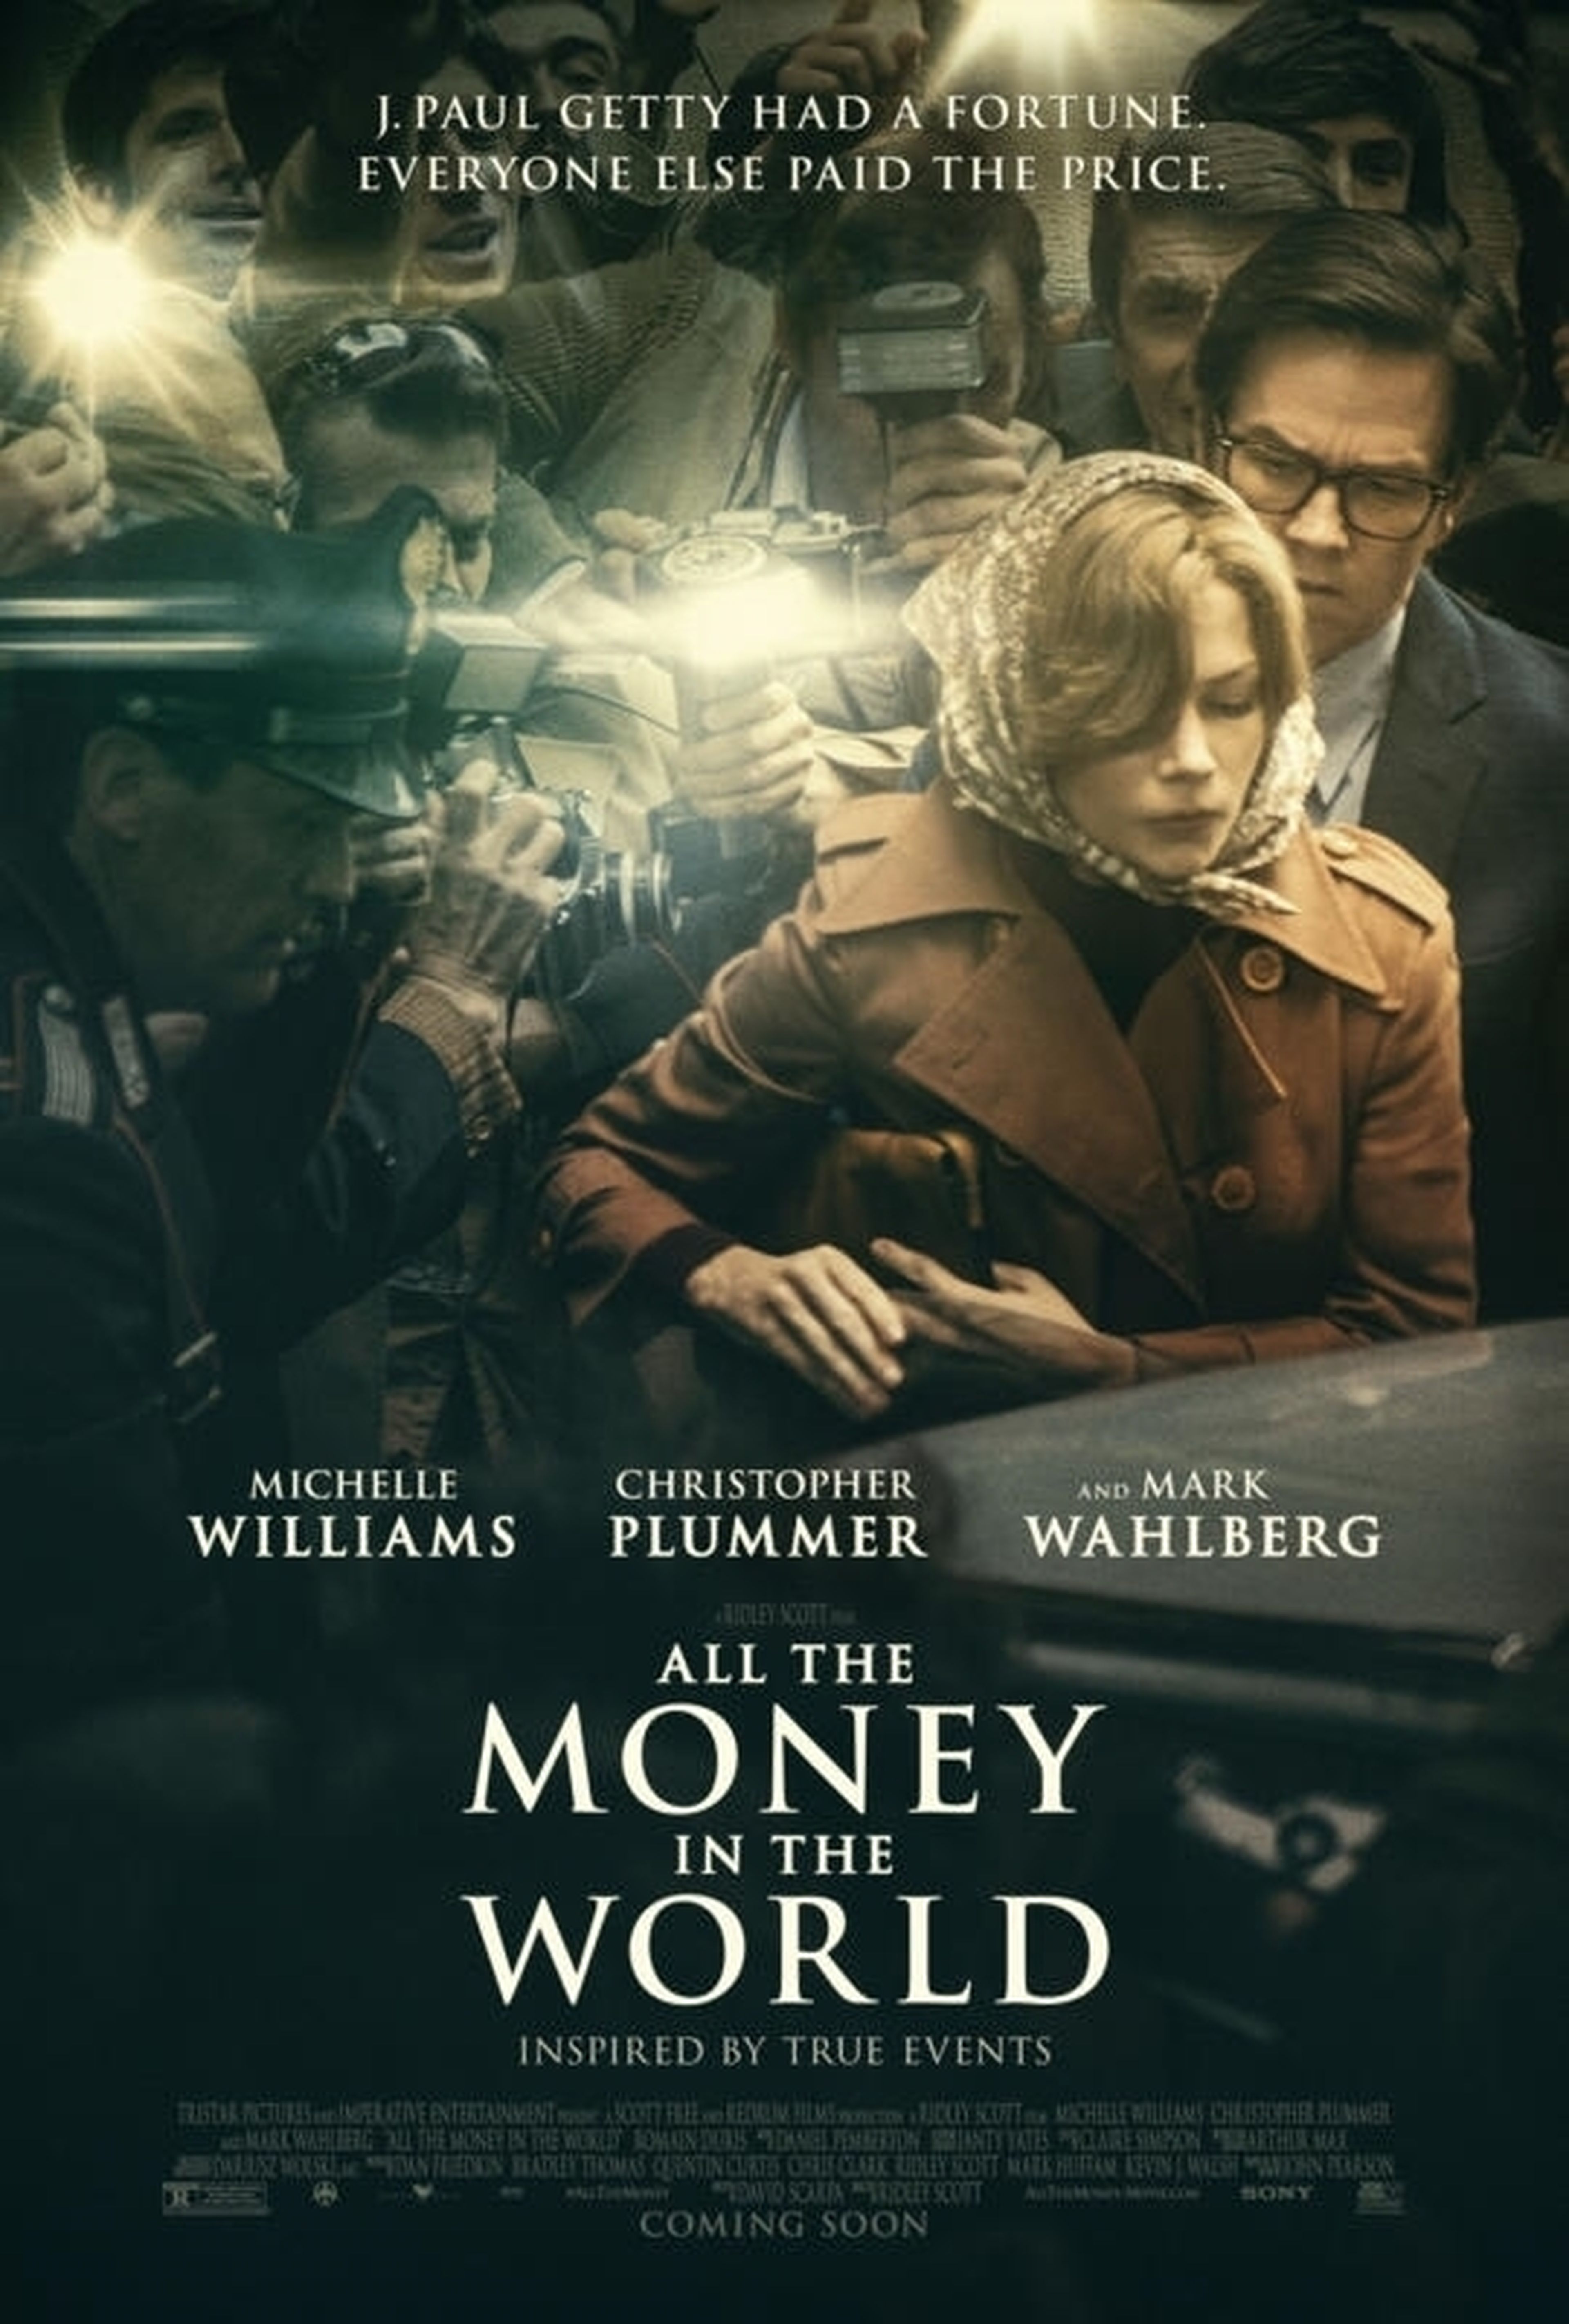 Todo el dinero del mundo - Nuevo póster con Christopher Plummer